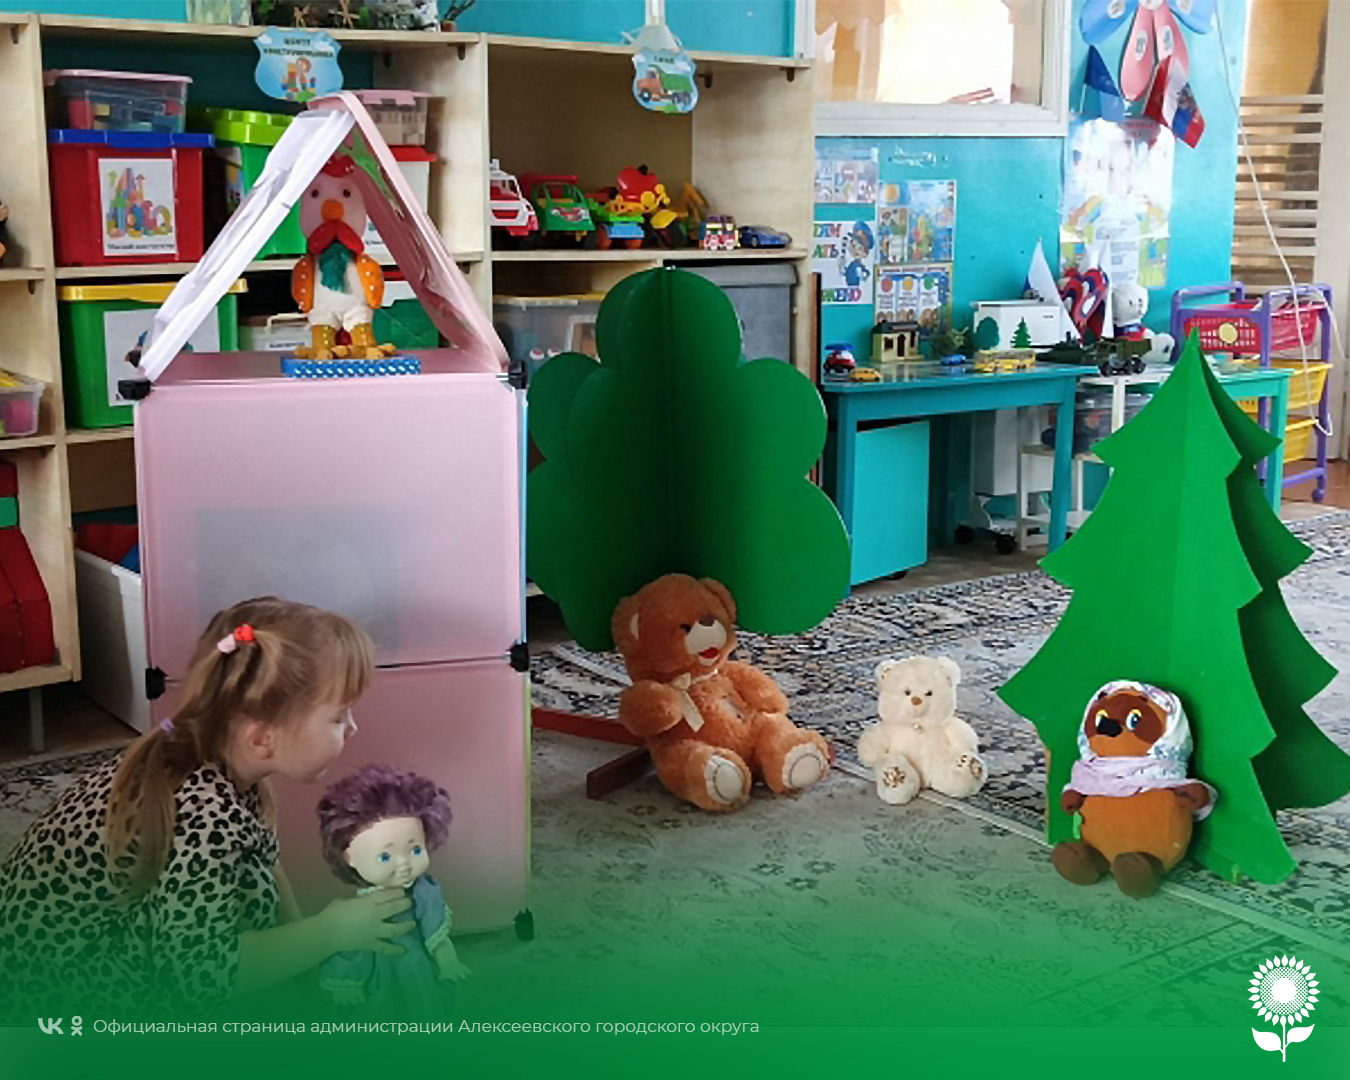 В детских садах Алексеевского городского округа была организована театральная постановка «Три Медведя» с участием воспитанников.